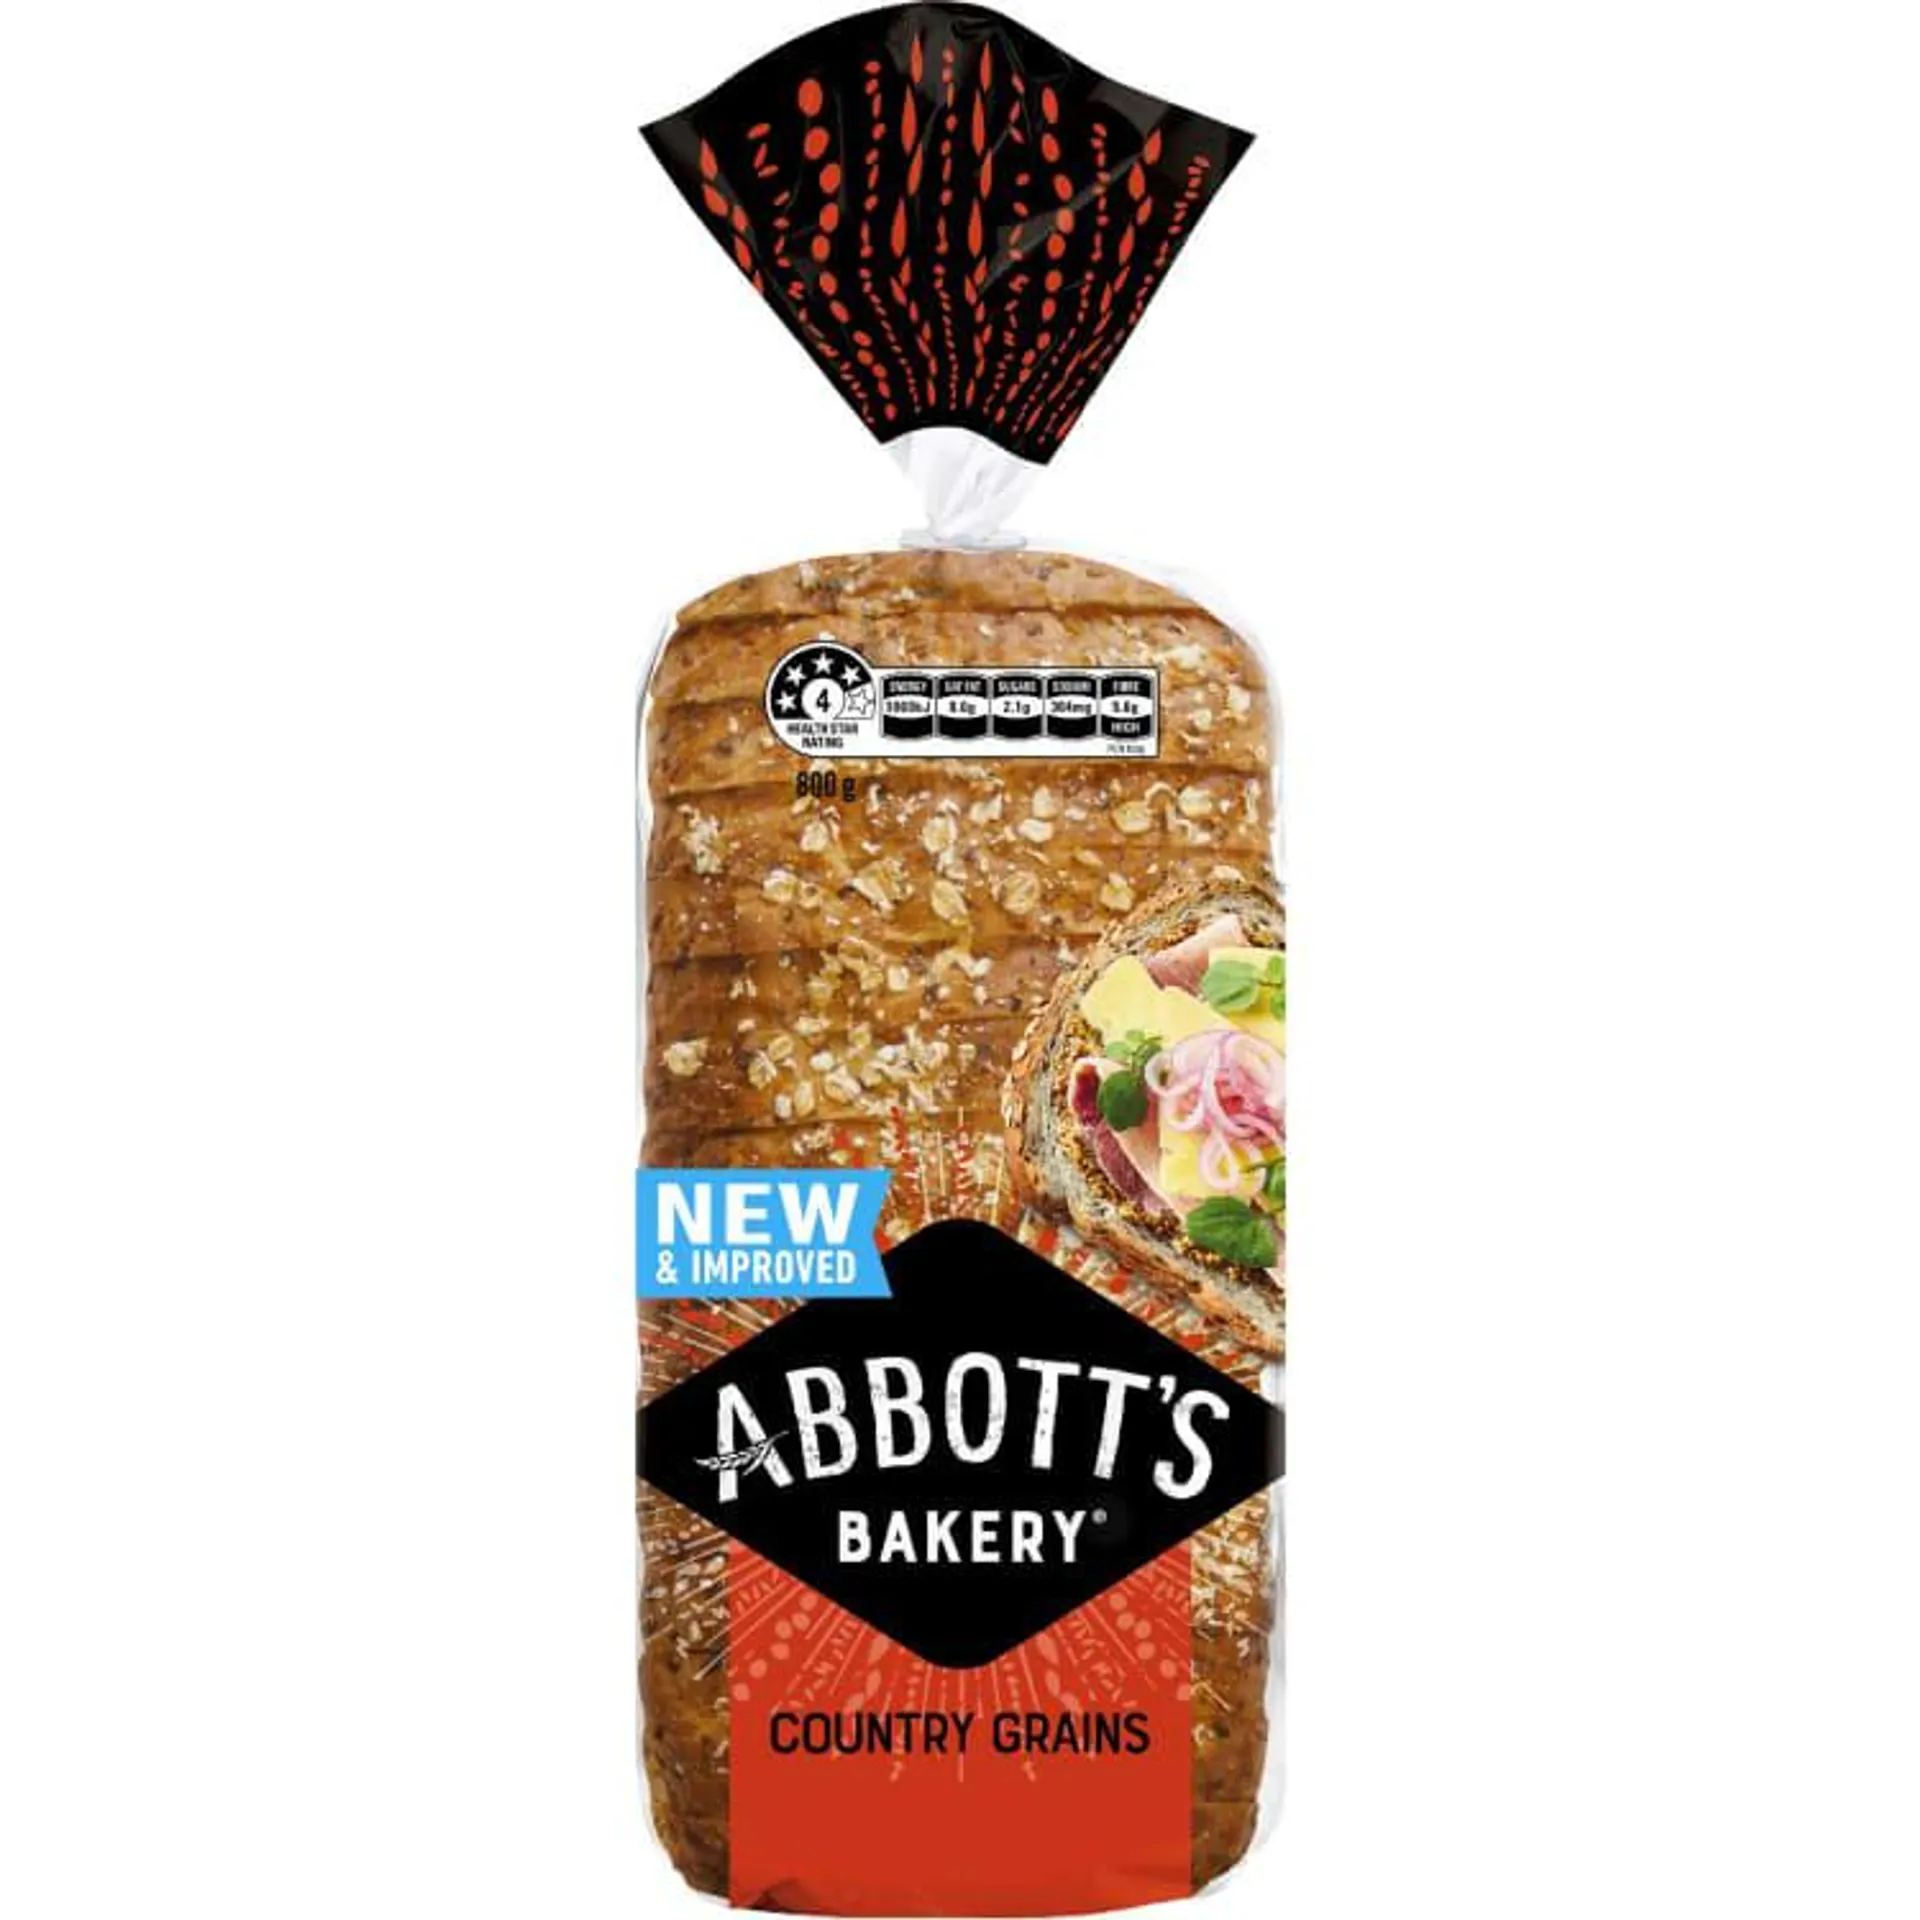 Abbott's Bakery Country Grains Bread